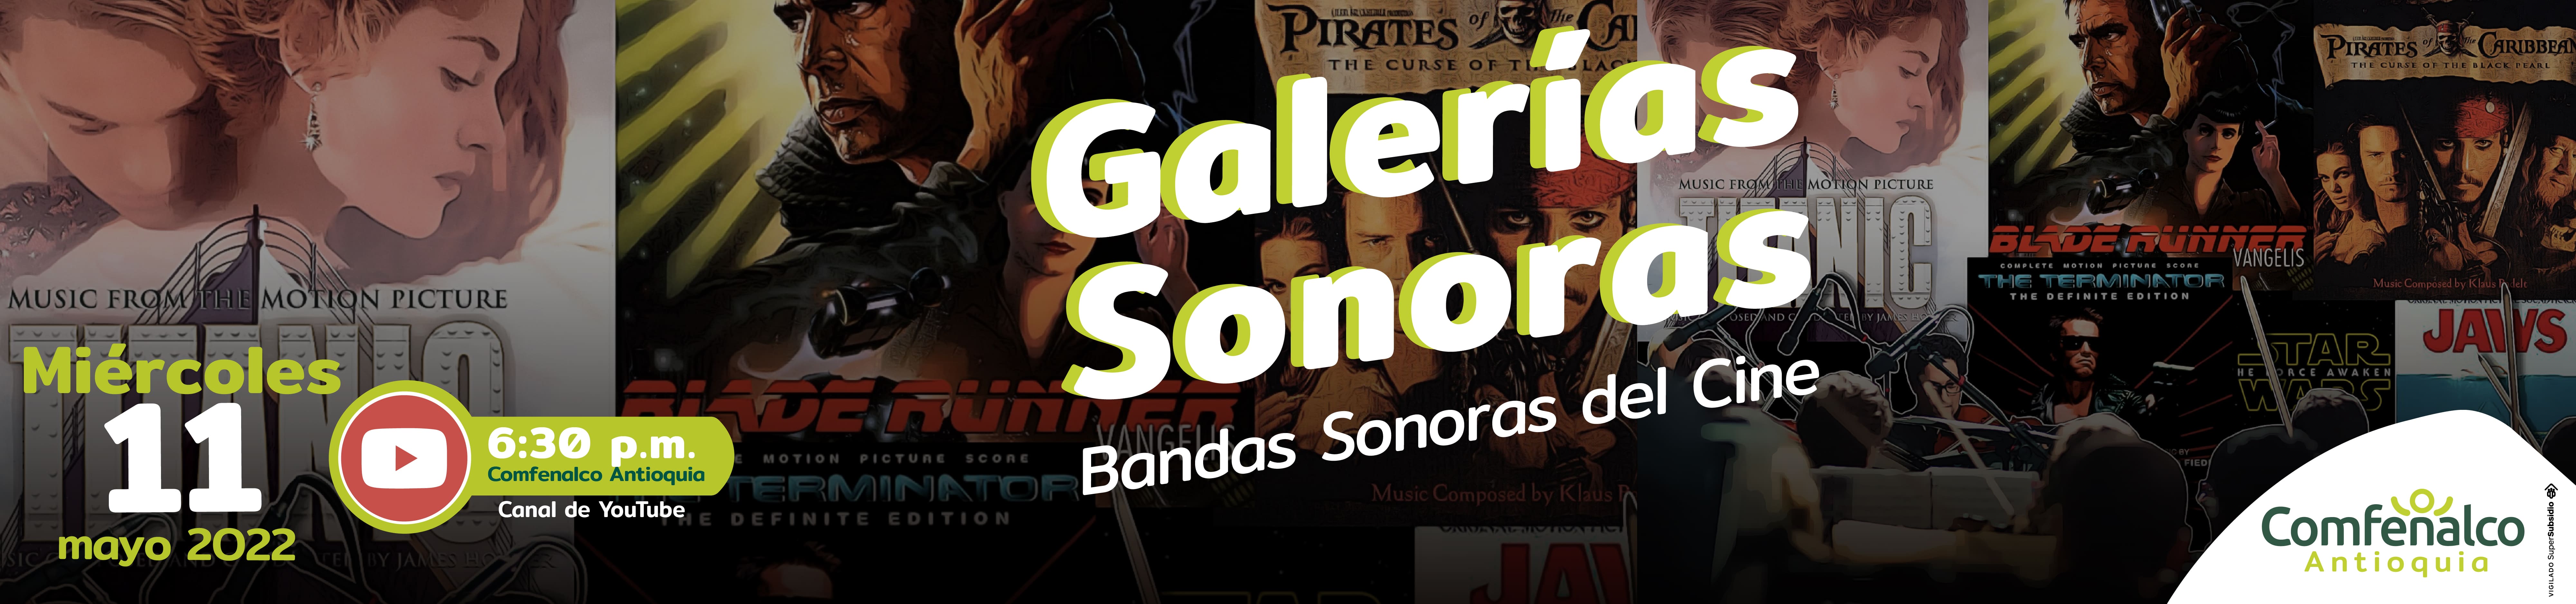 Evento: Galerías Sonoras en el Canal de Youtube Comfenalco Antioquia